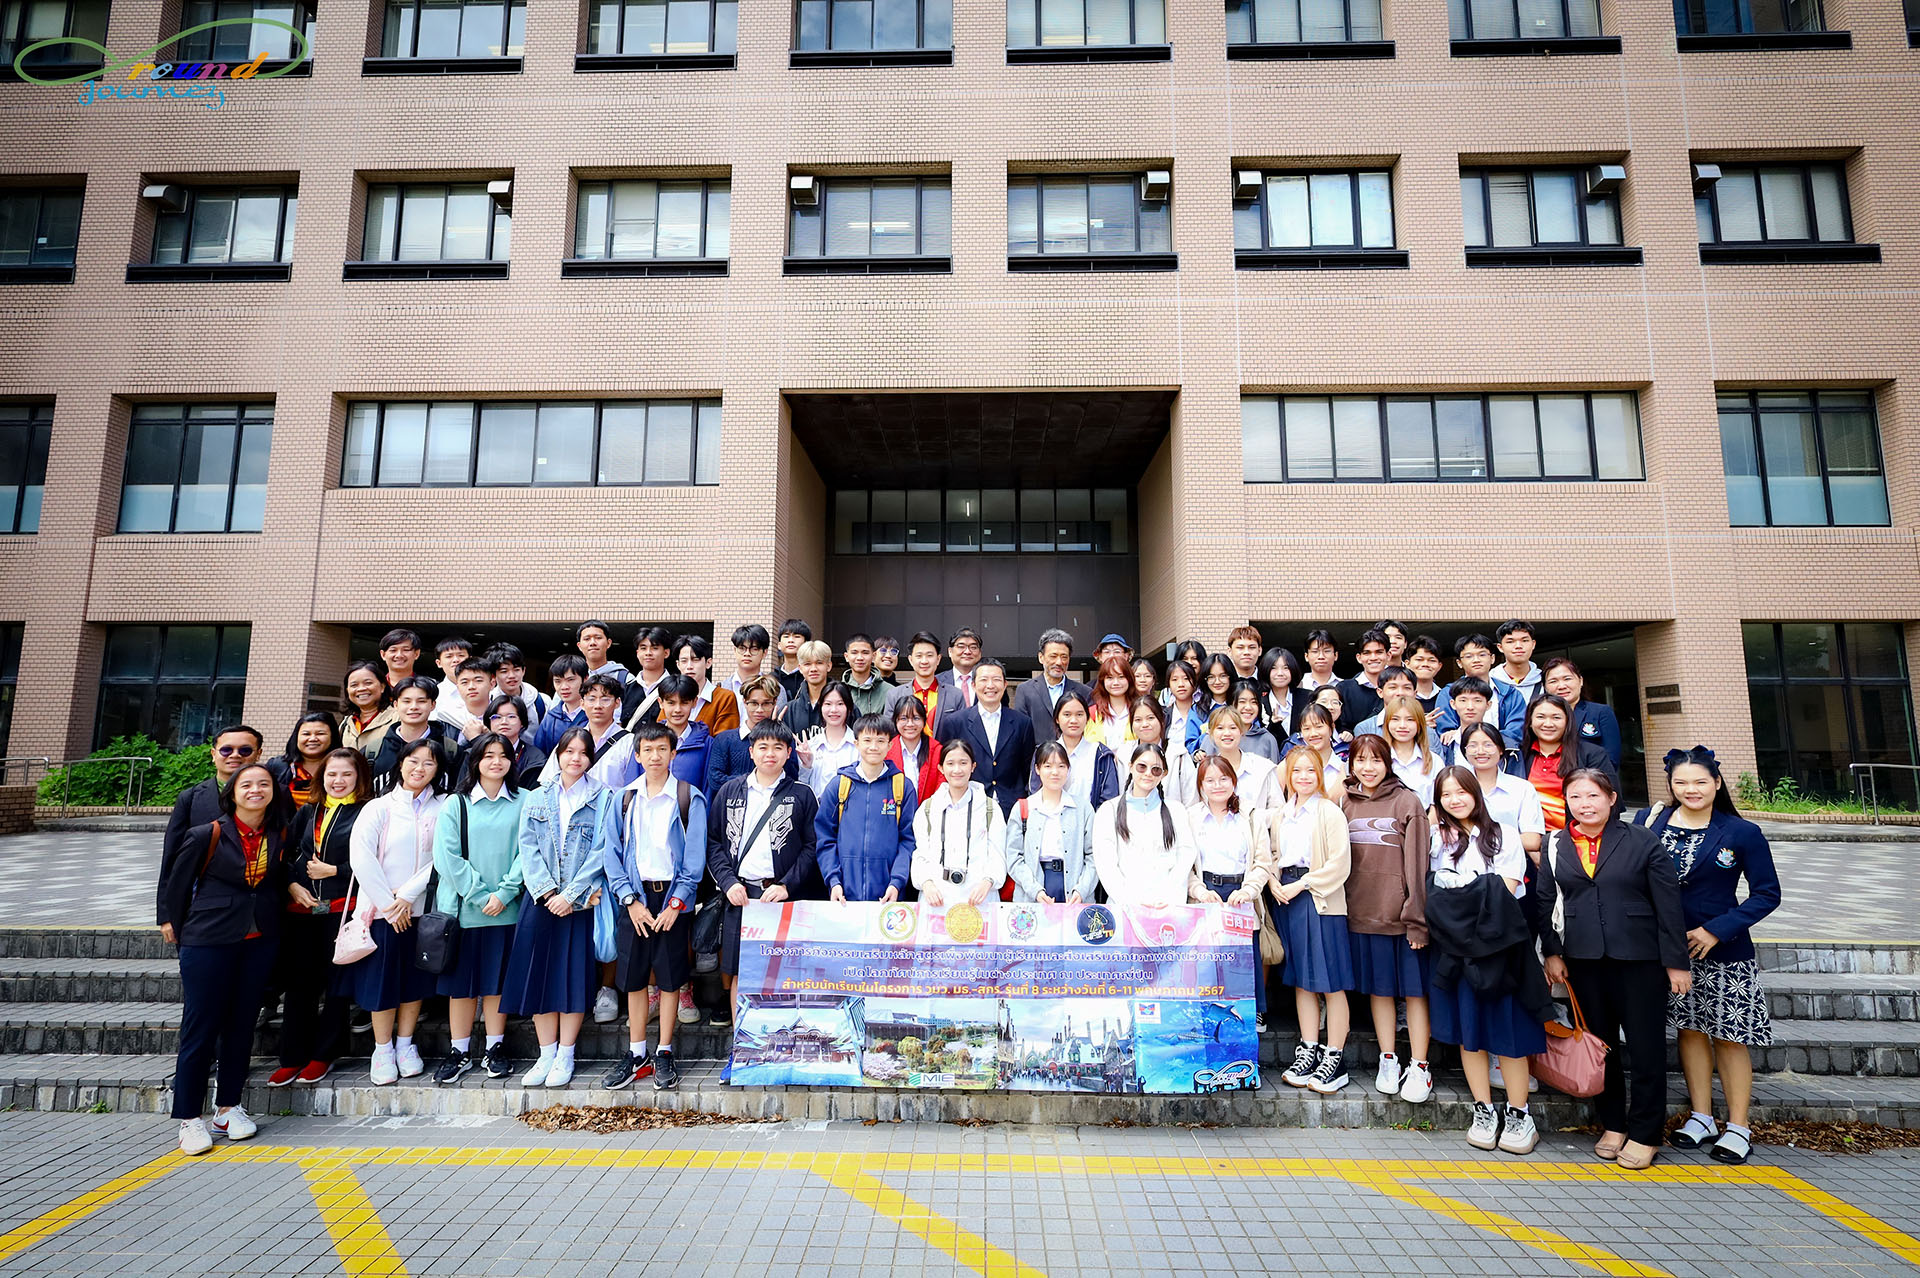 โครงการกิจกรรมเสริมหลักสูตรเพื่อพัฒนาผู้เรียนและส่งเสริมศักยภาพด้านวิชาการ ณ ประเทศญี่ปุ่น (รุ่น 8)